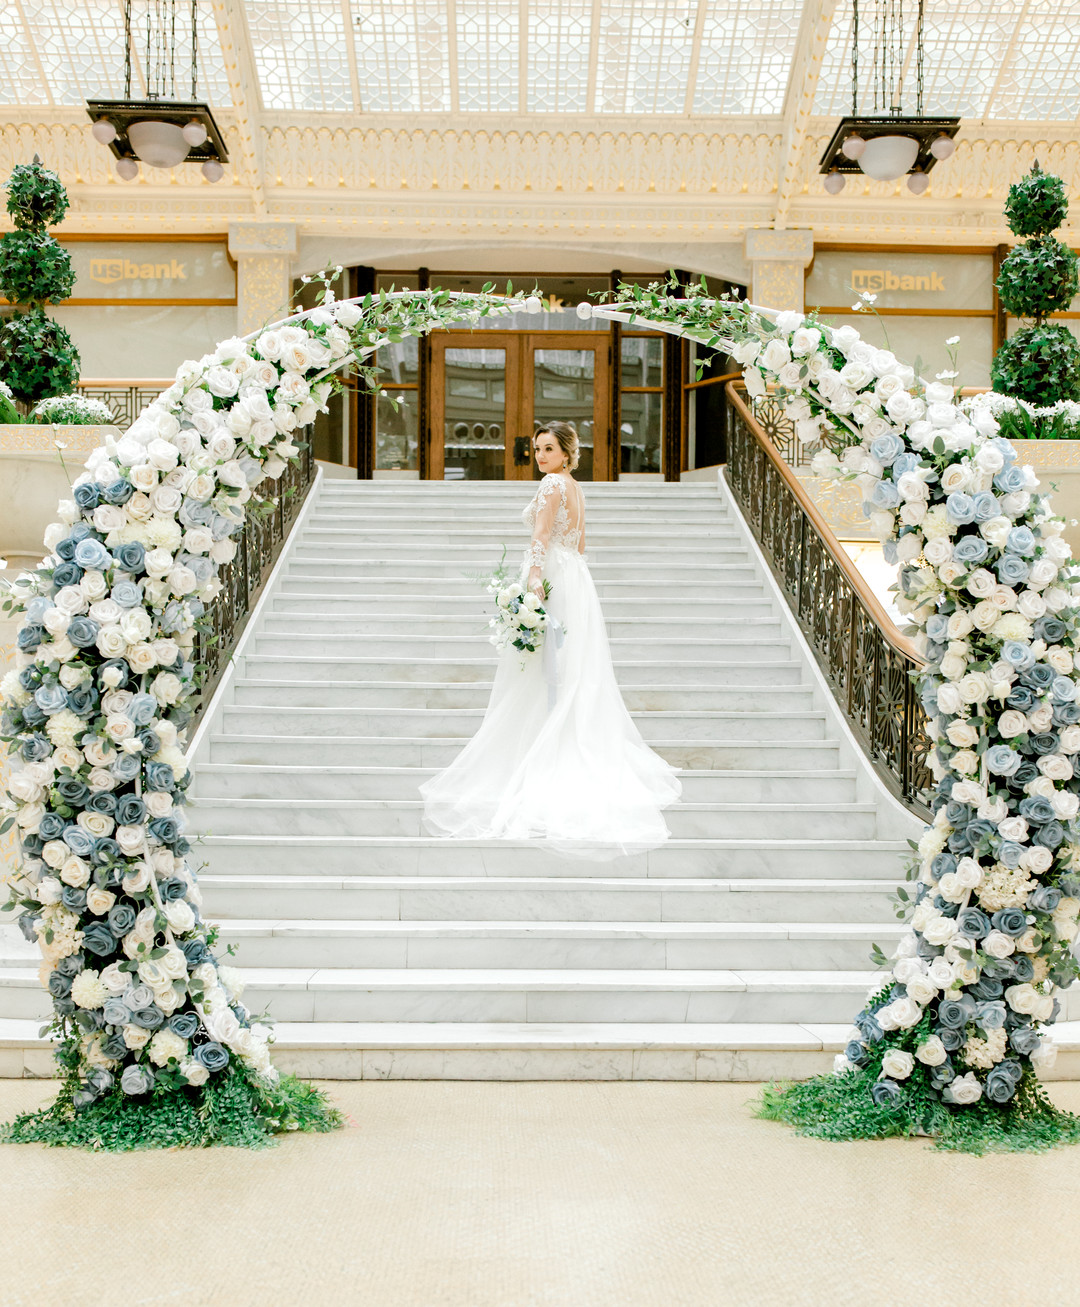 Wedding arch flowers - ltpery